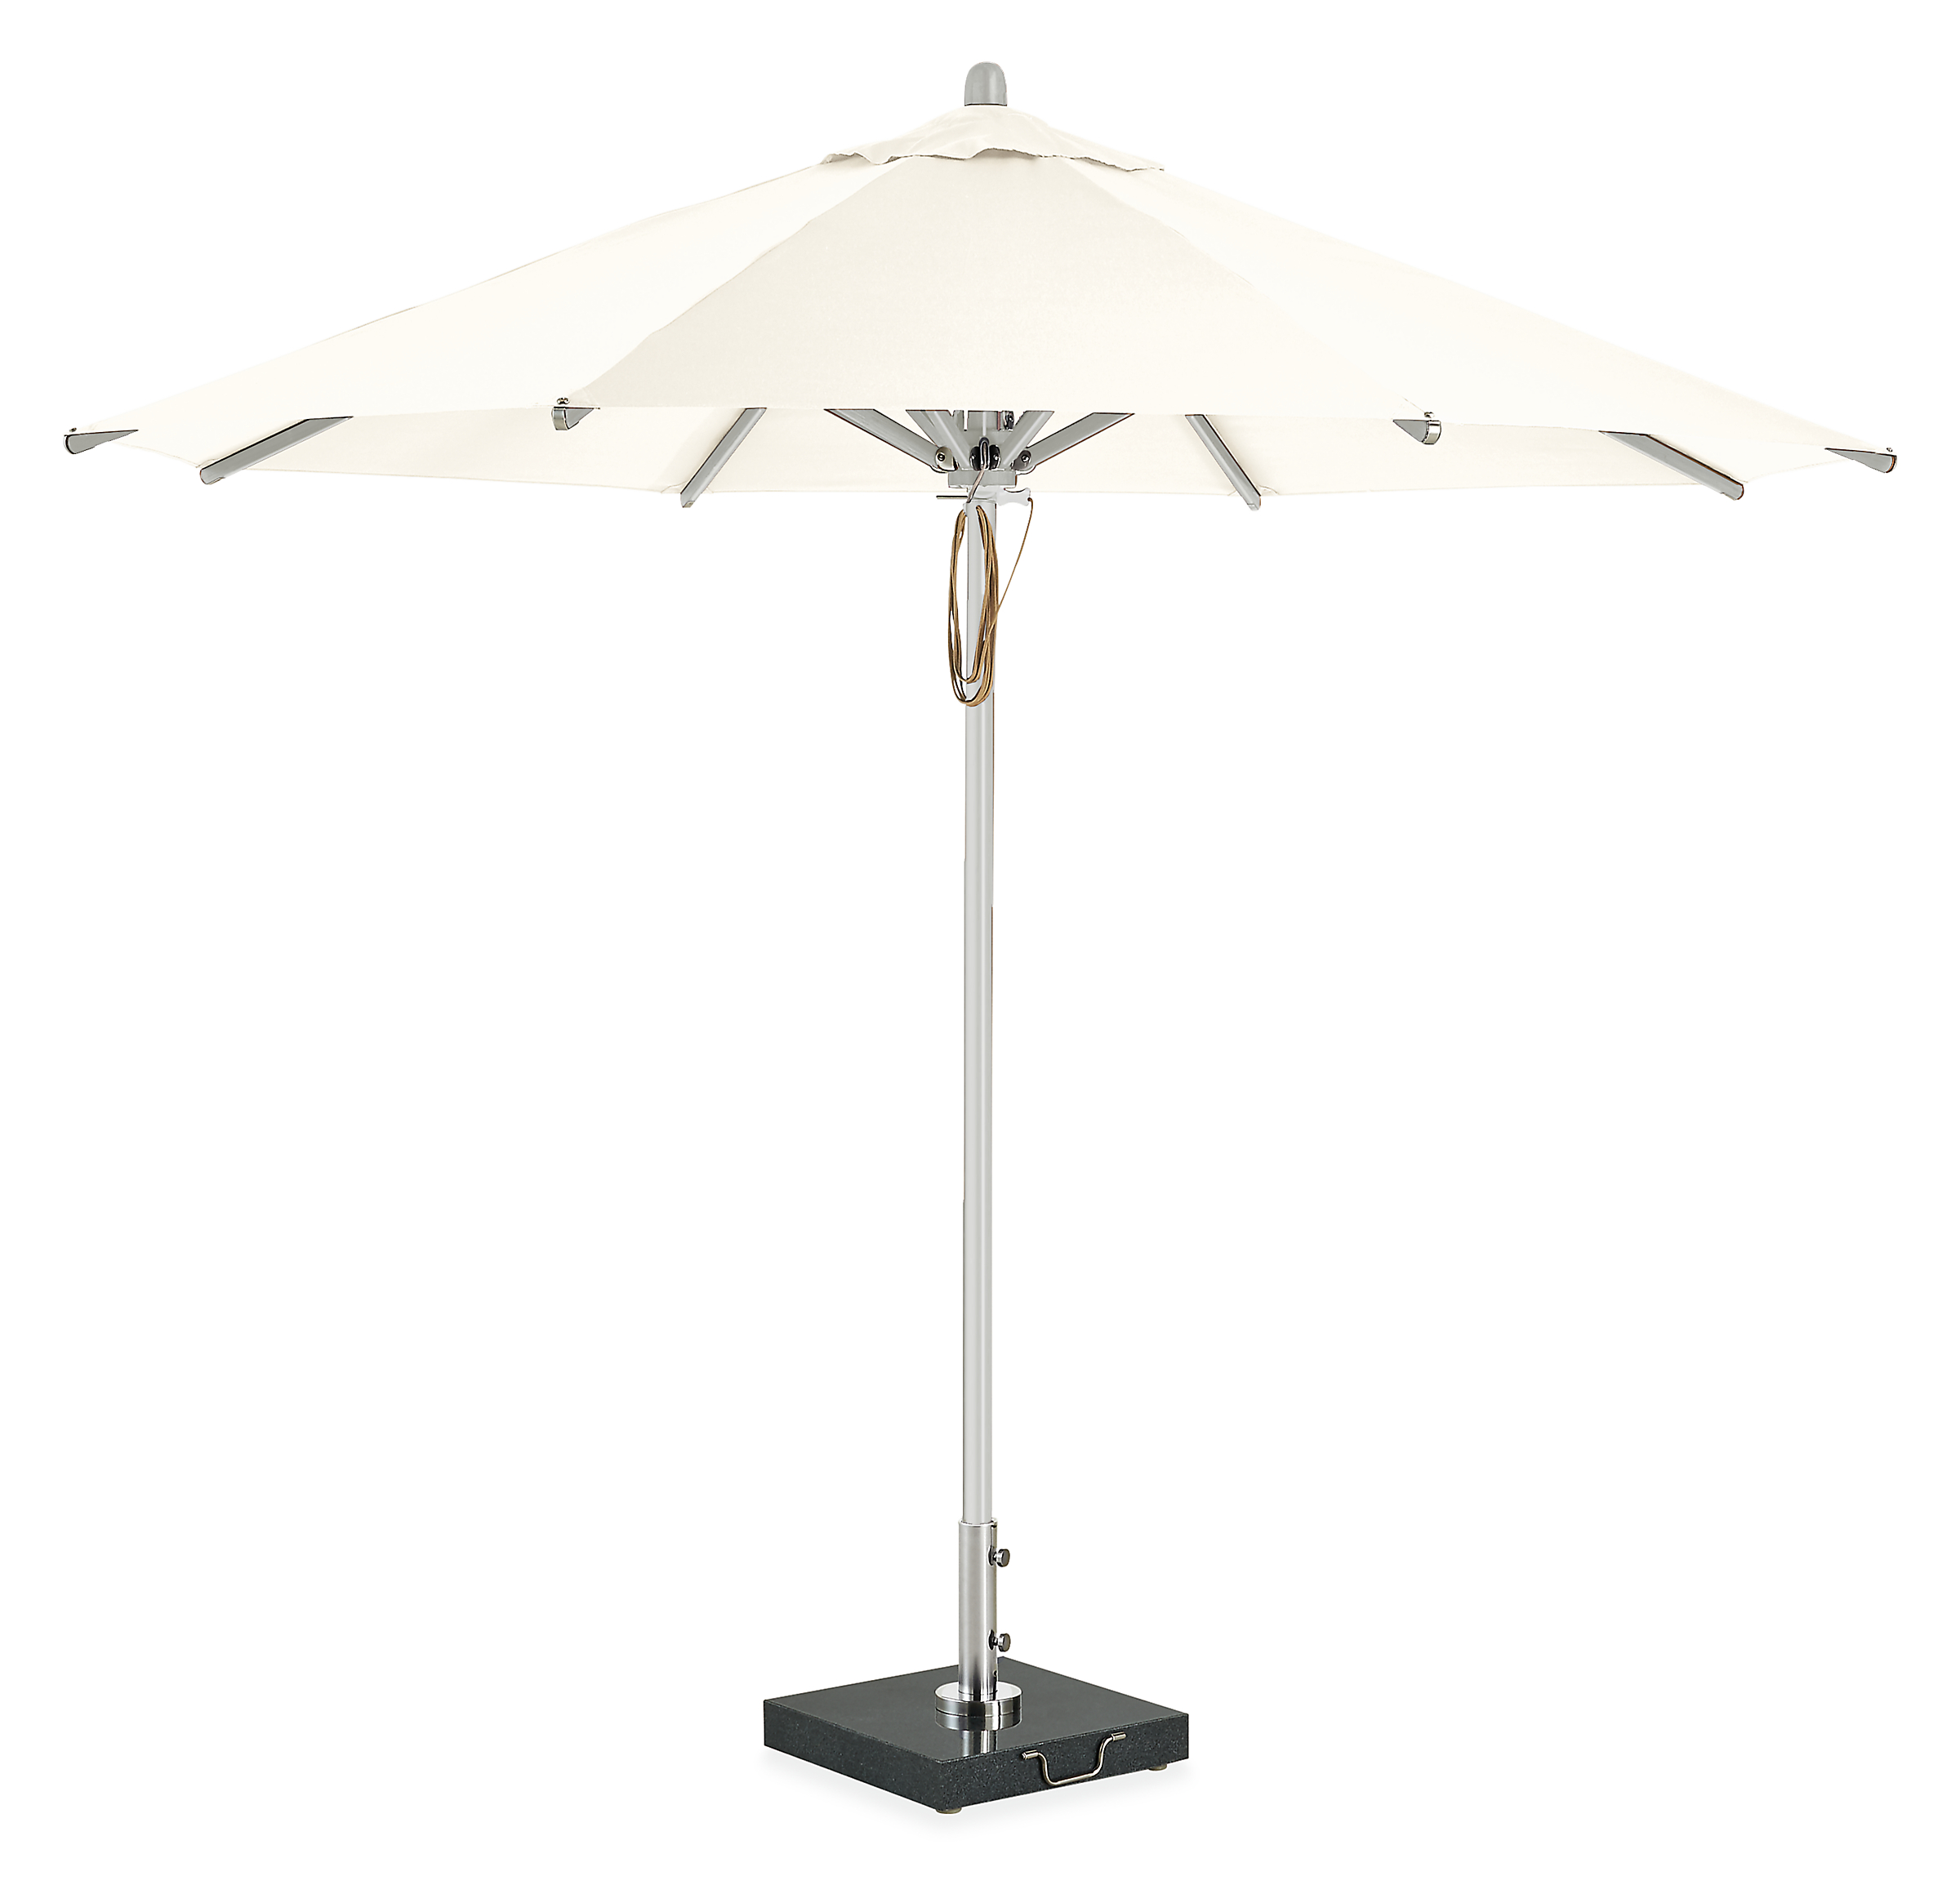 Cirro 10' Patio Umbrella in White with Aluminum Pole